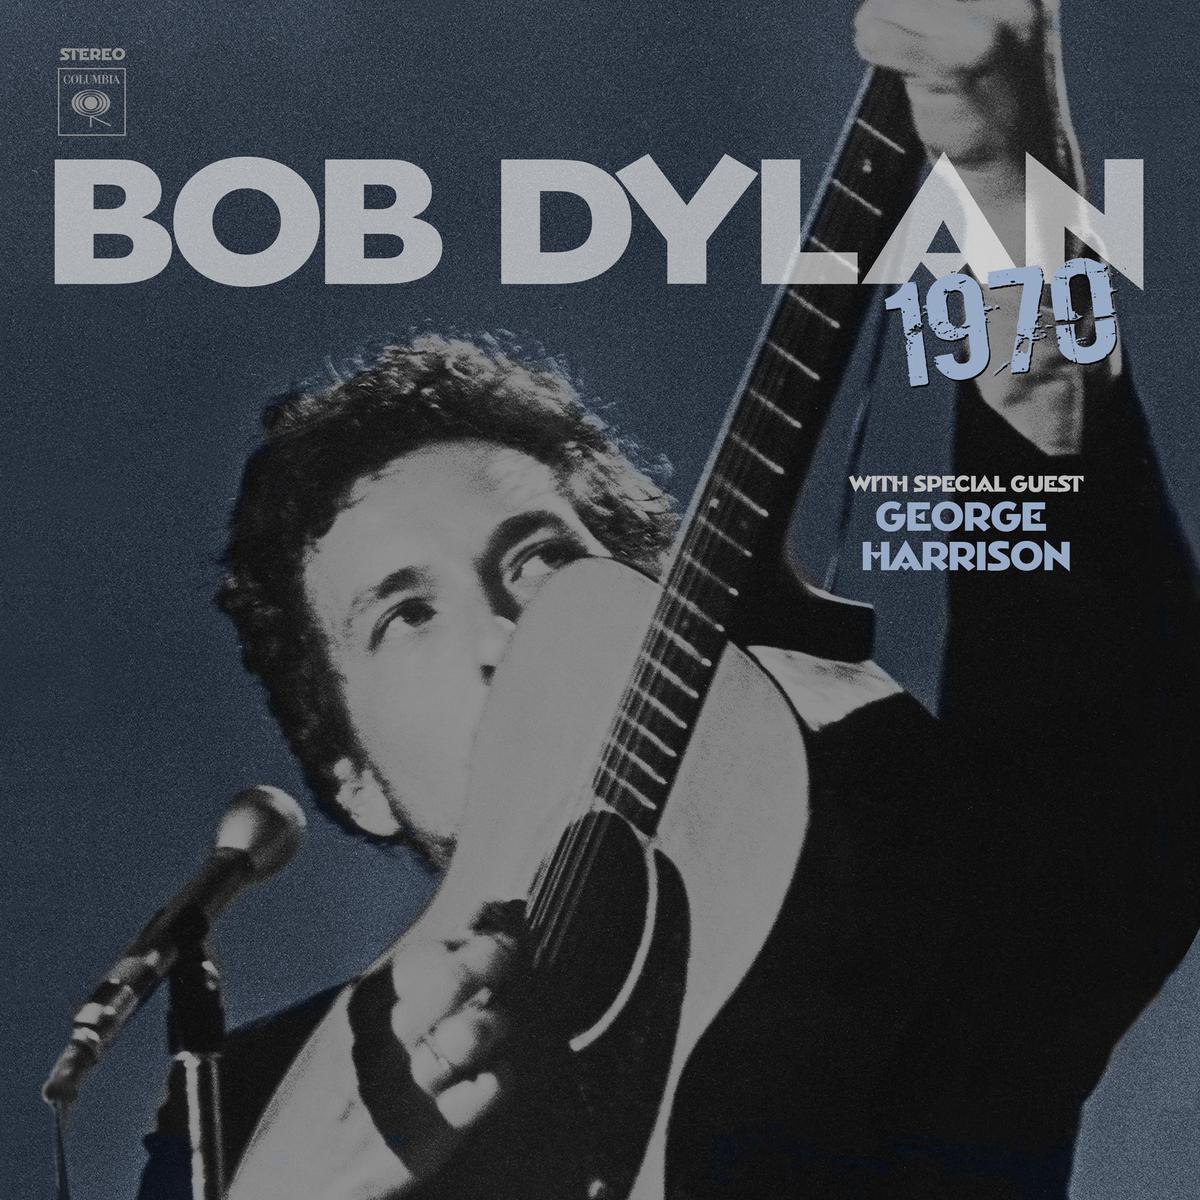 Bob Dylanb - 1970 (CD) - Bob Dylan